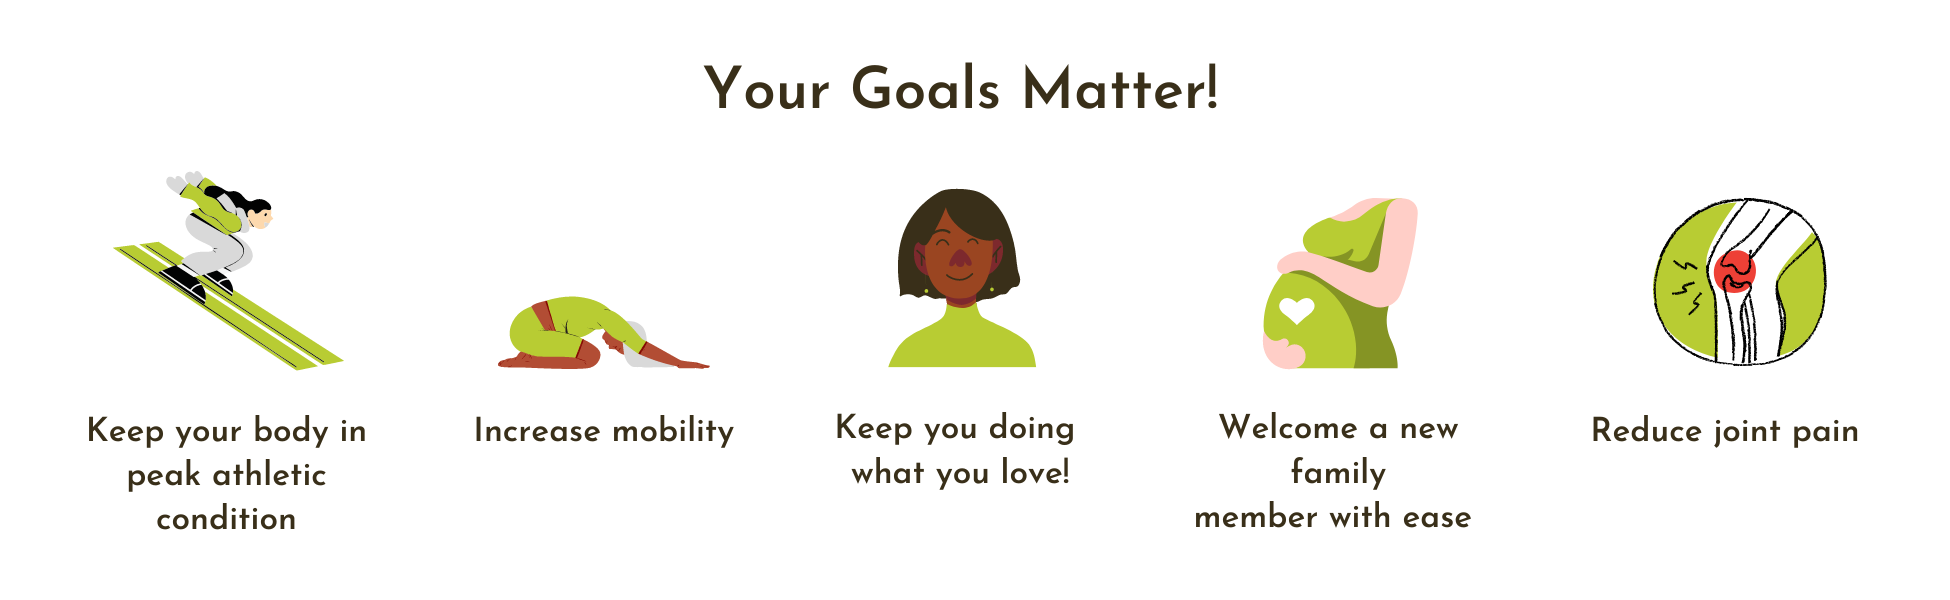 Your Goals Matter